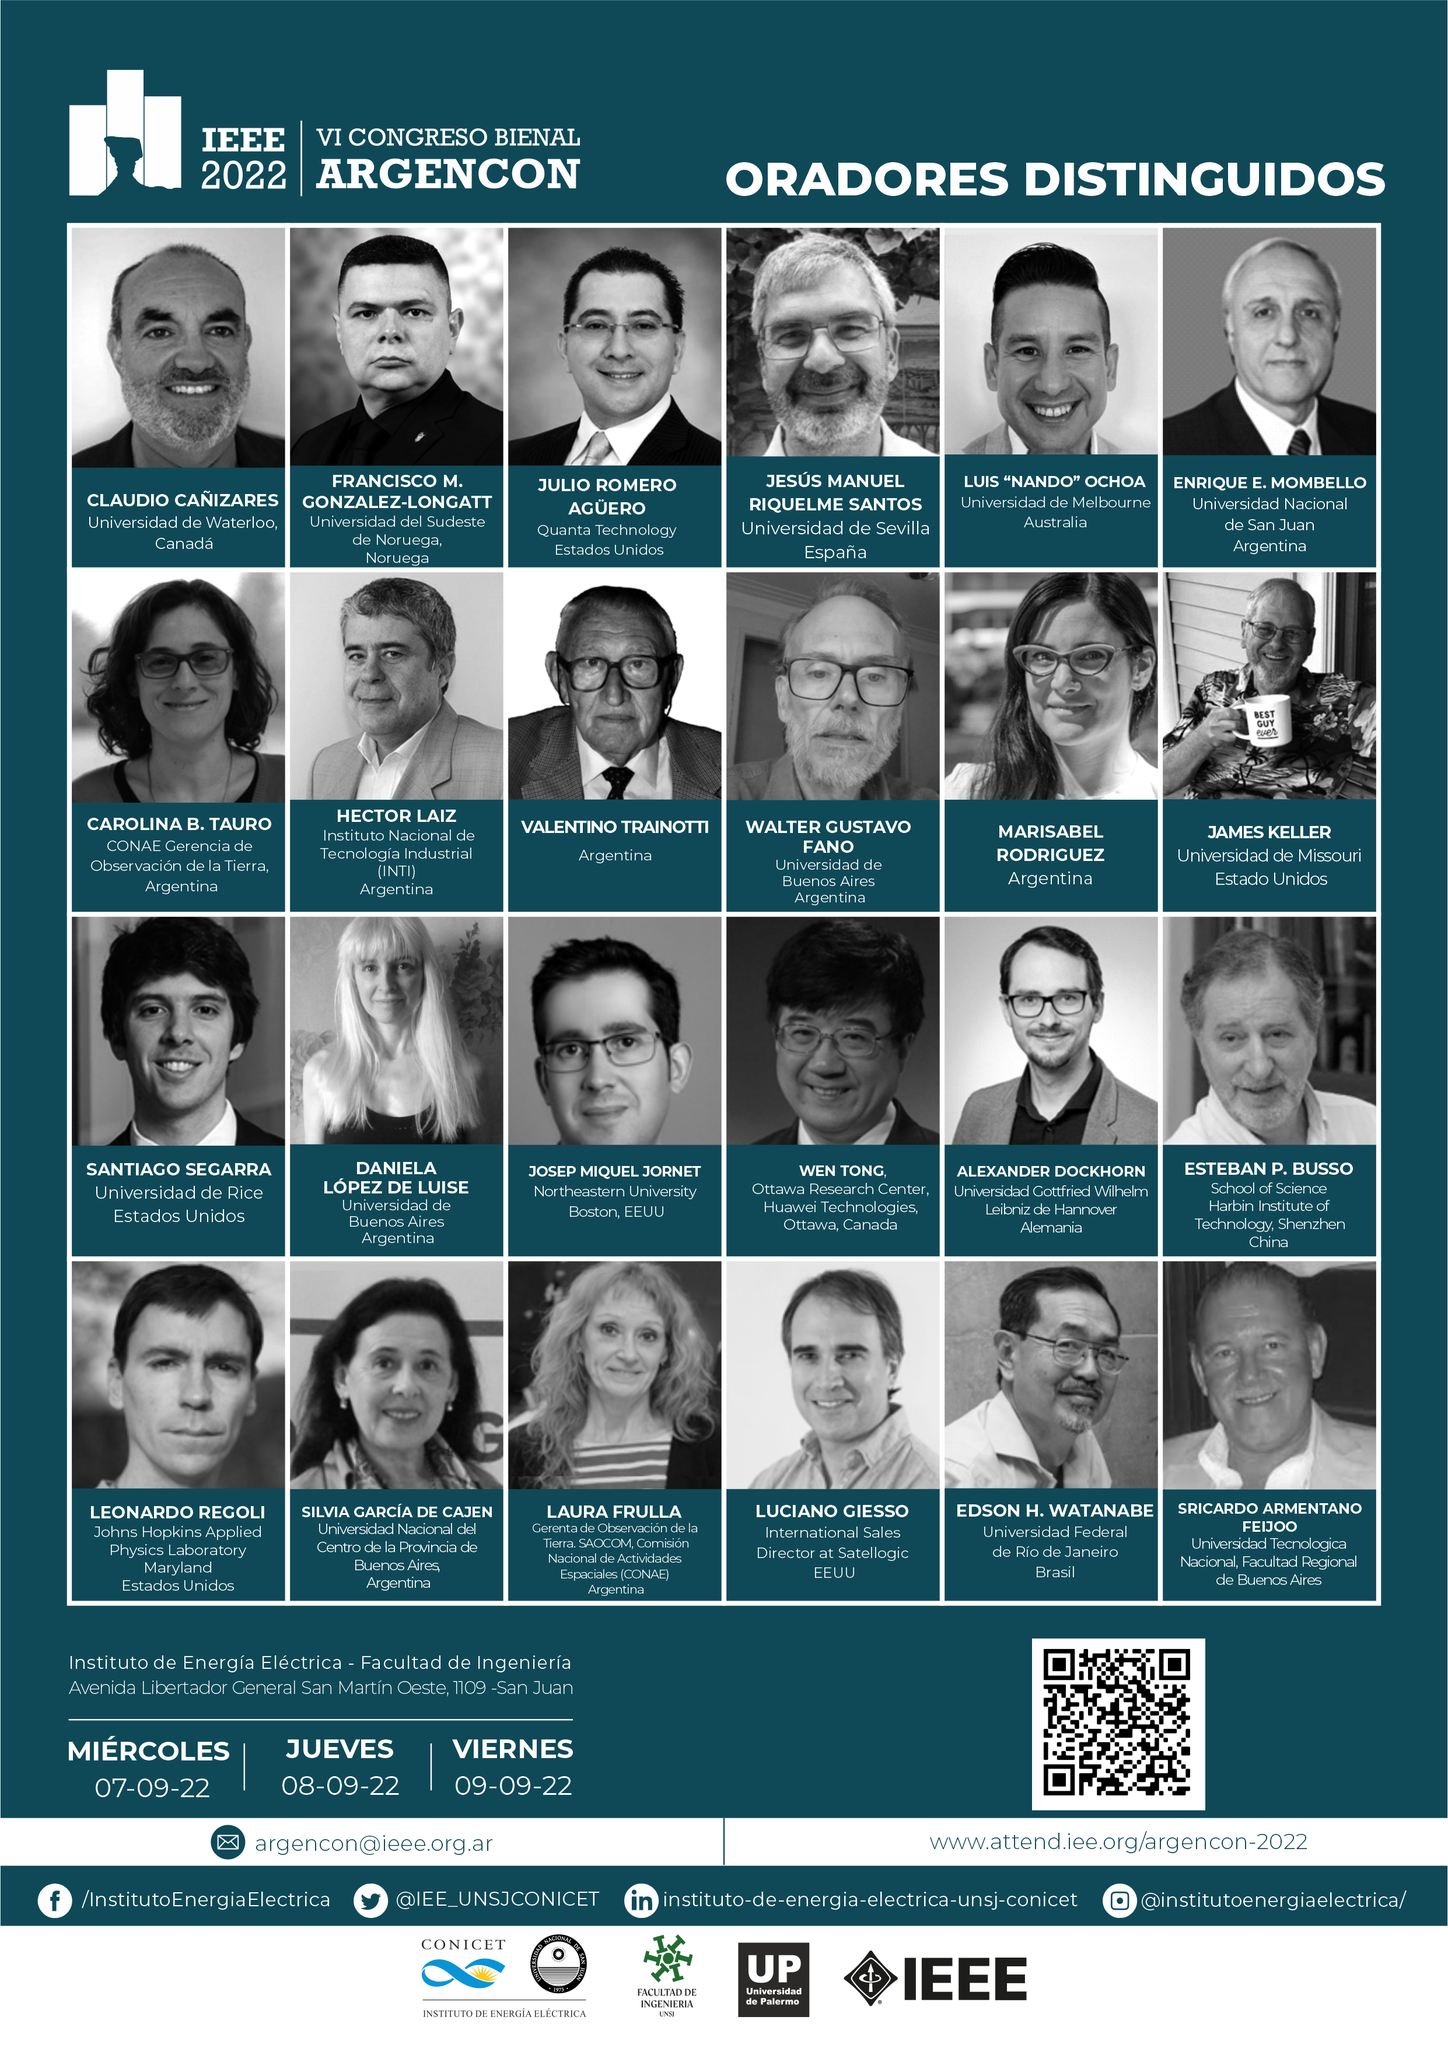 Congreso Bienal del IEEE ARGENCON 2022